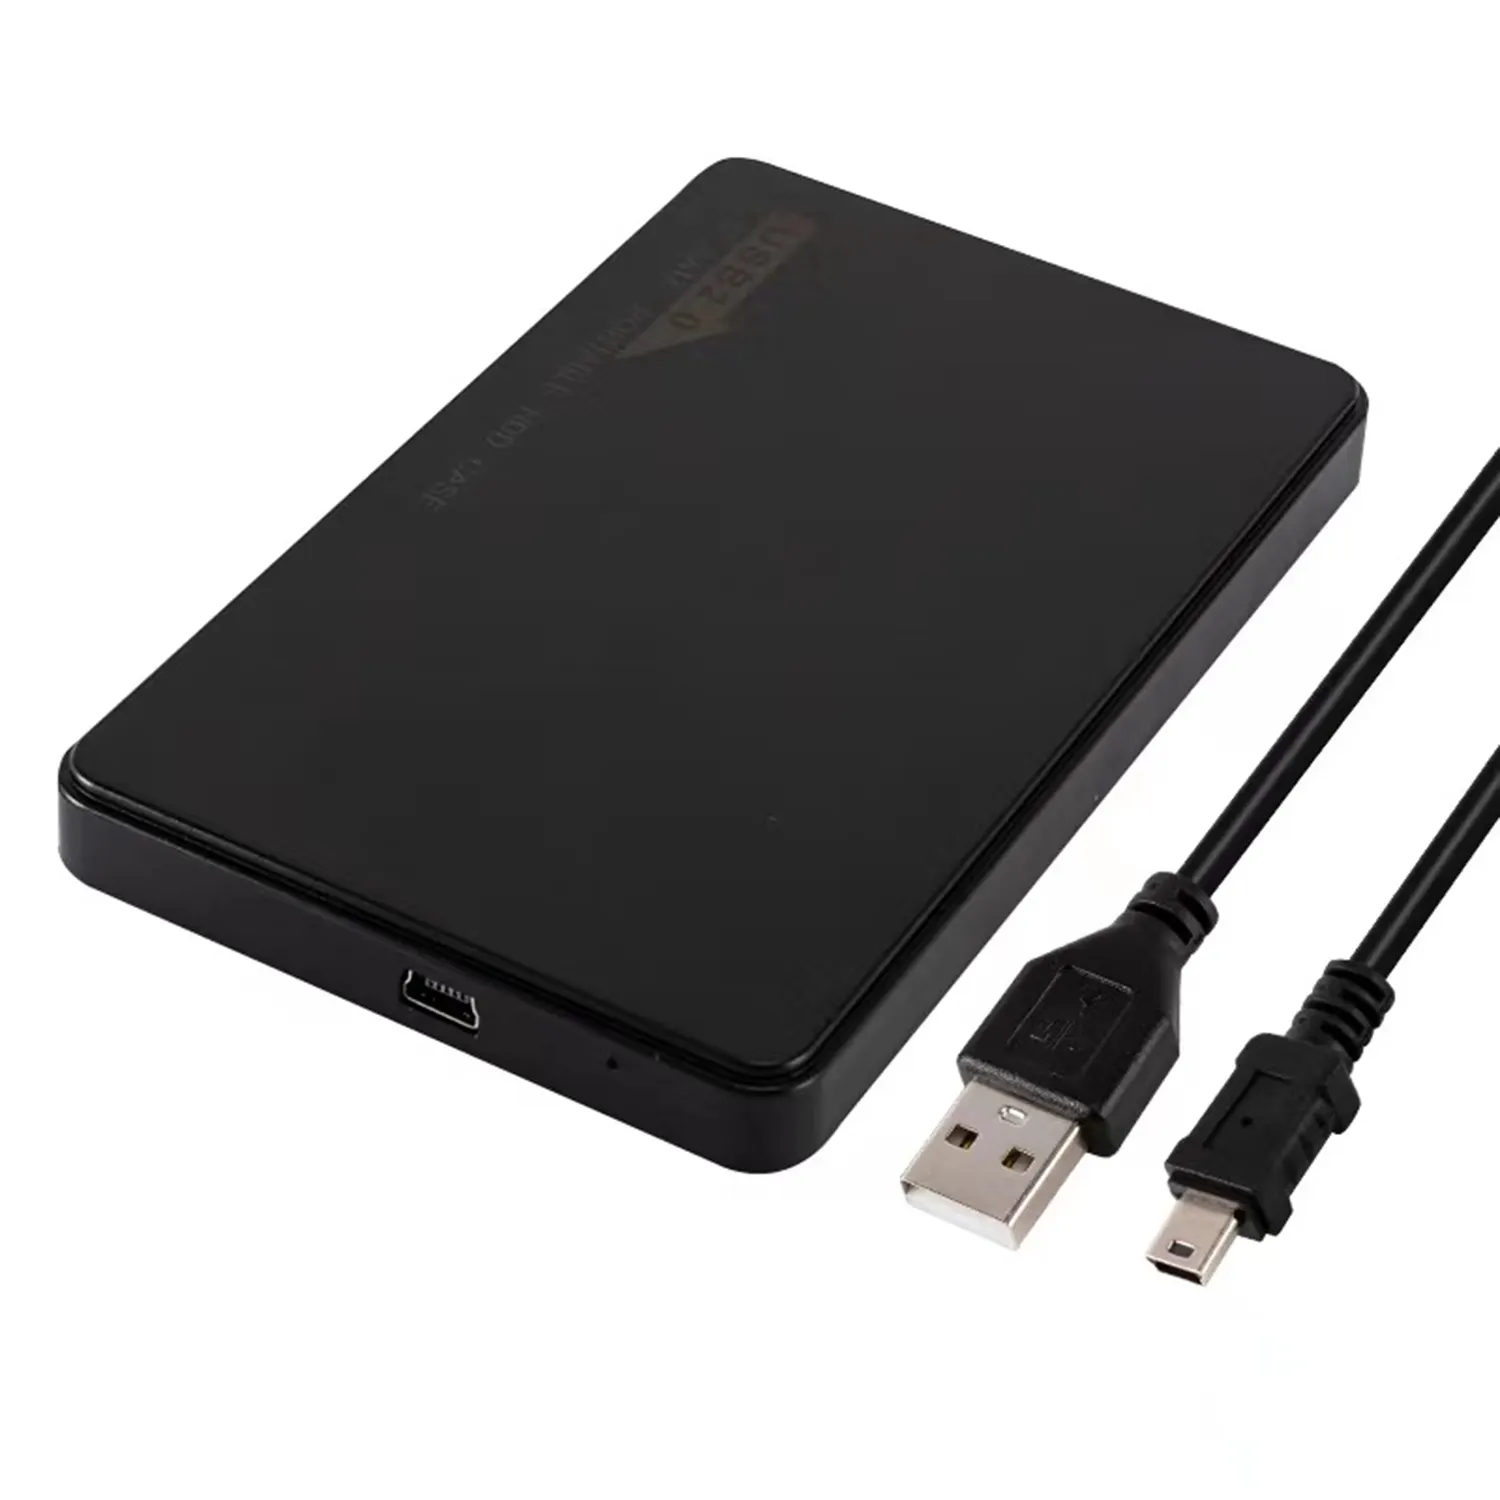 WEETOTUNG USB 2.0 to SATA 2.5'' Hard Drive Disk Enclosure Case